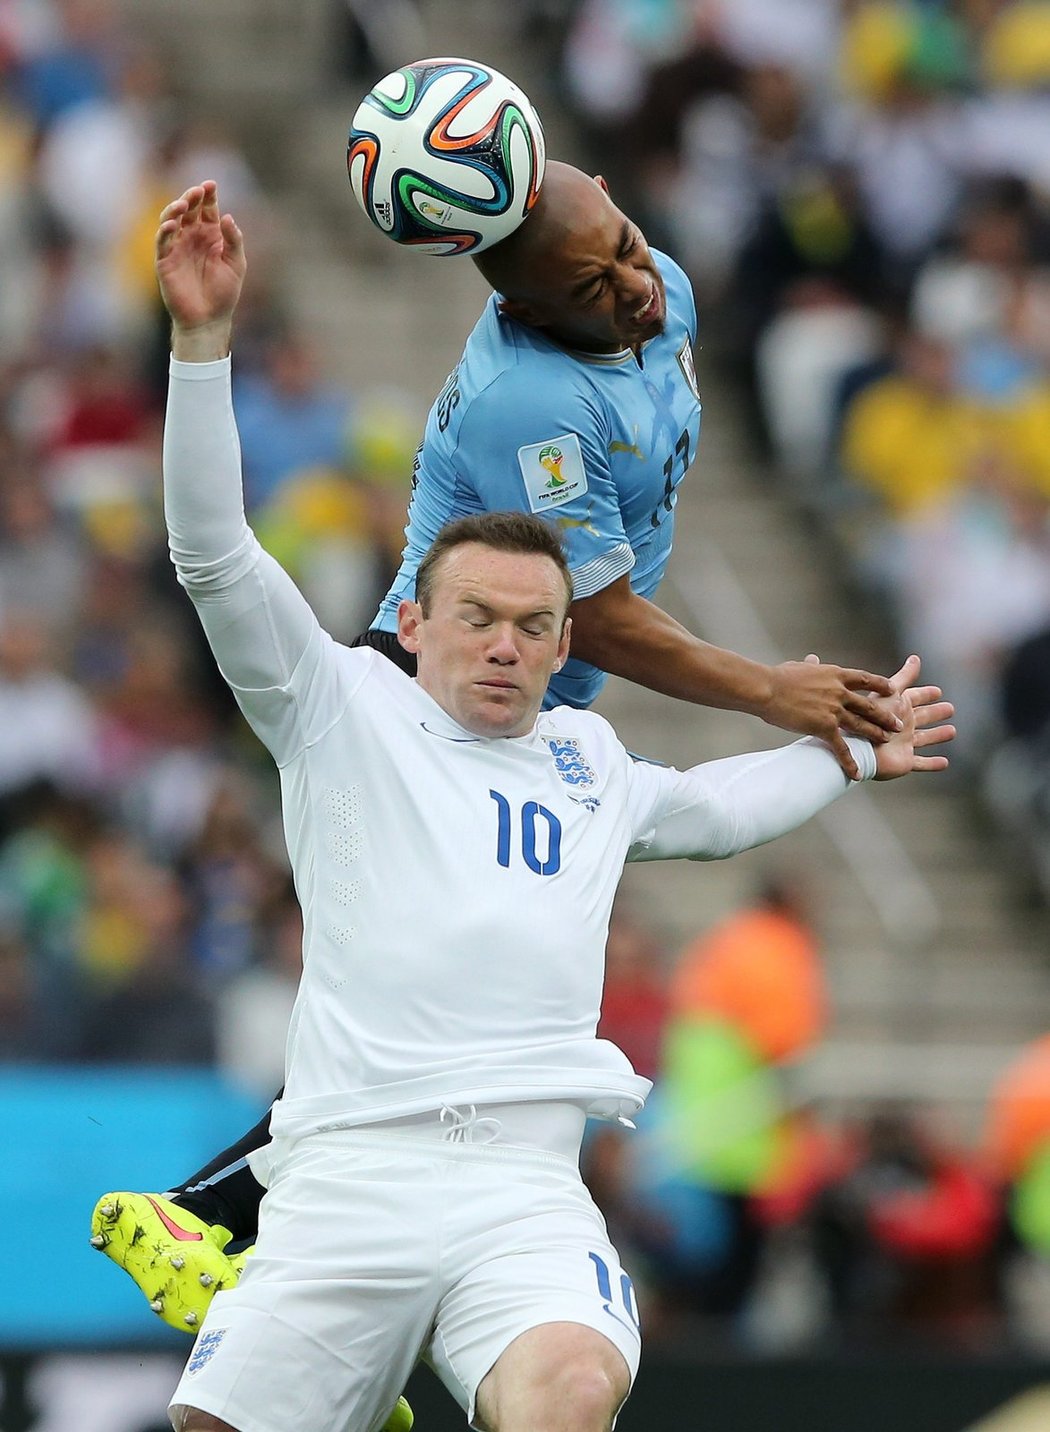 Arevalo dokázal vyskočit výš a odhlavičkovat míč dříve než Rooney